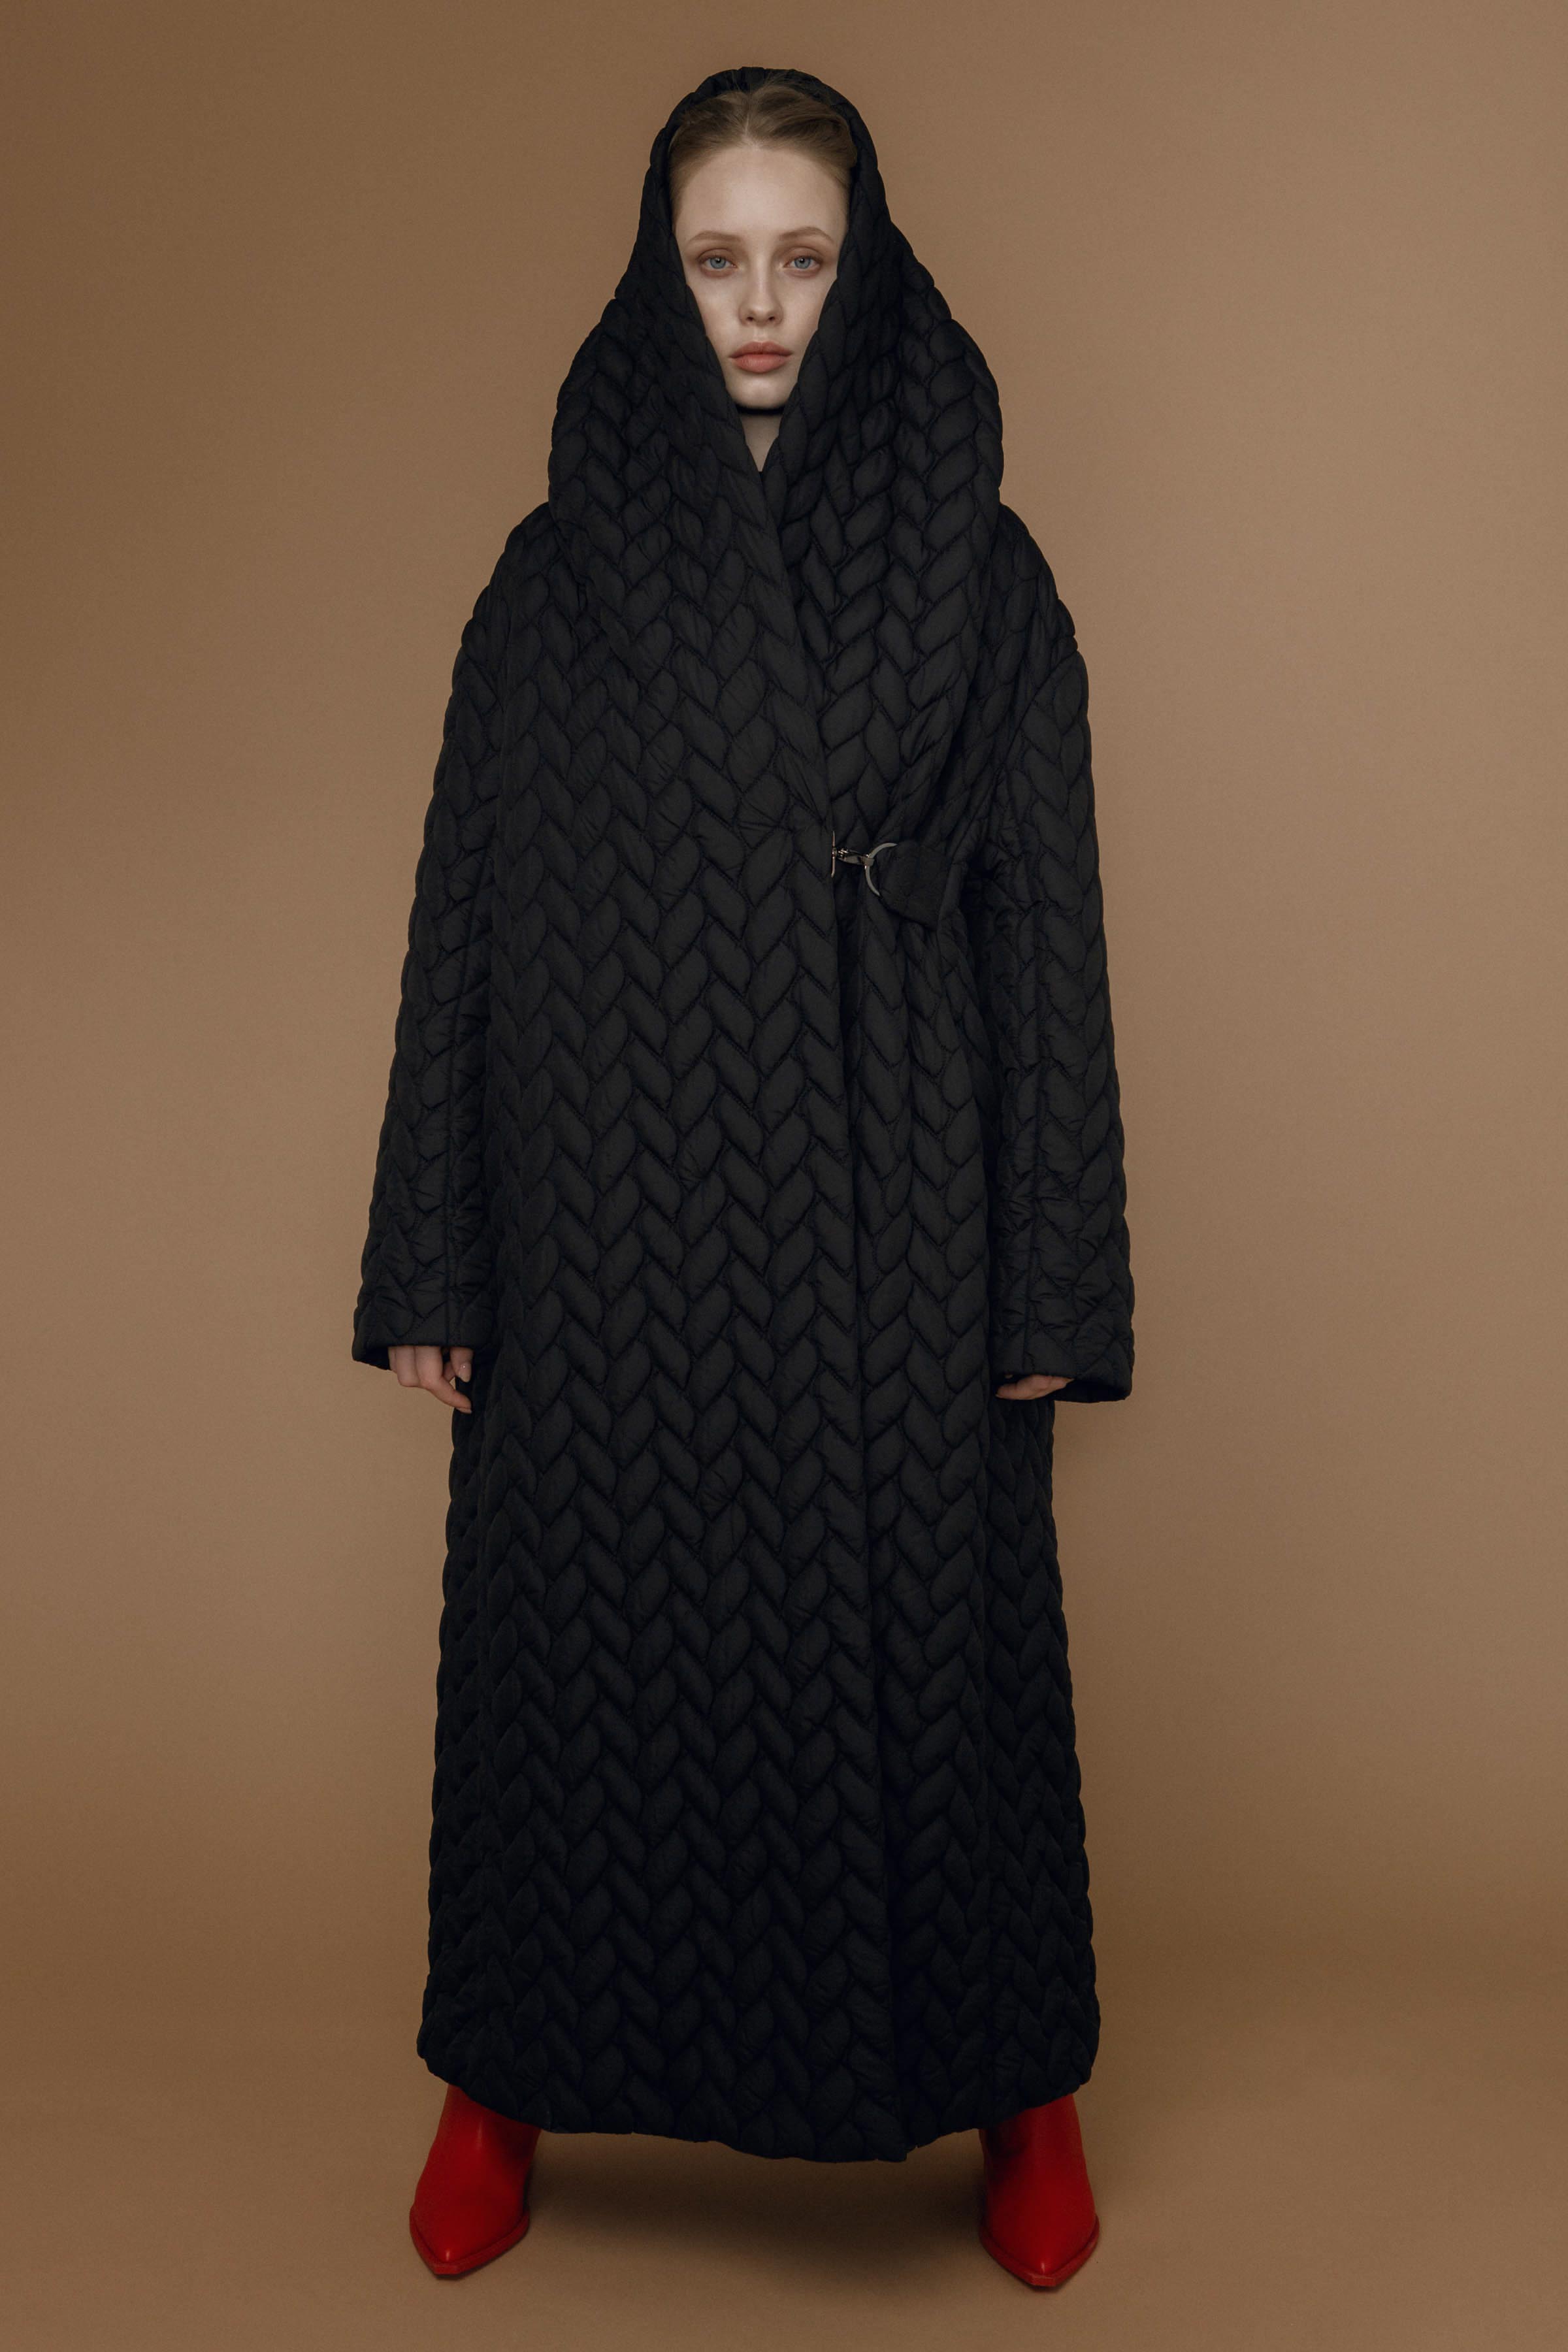 Пальто с капюшоном "Косы" 00 Черный (noir) от Lesel (Лесель)! Заказывайте по ✆ 8 (800) 777 02 37